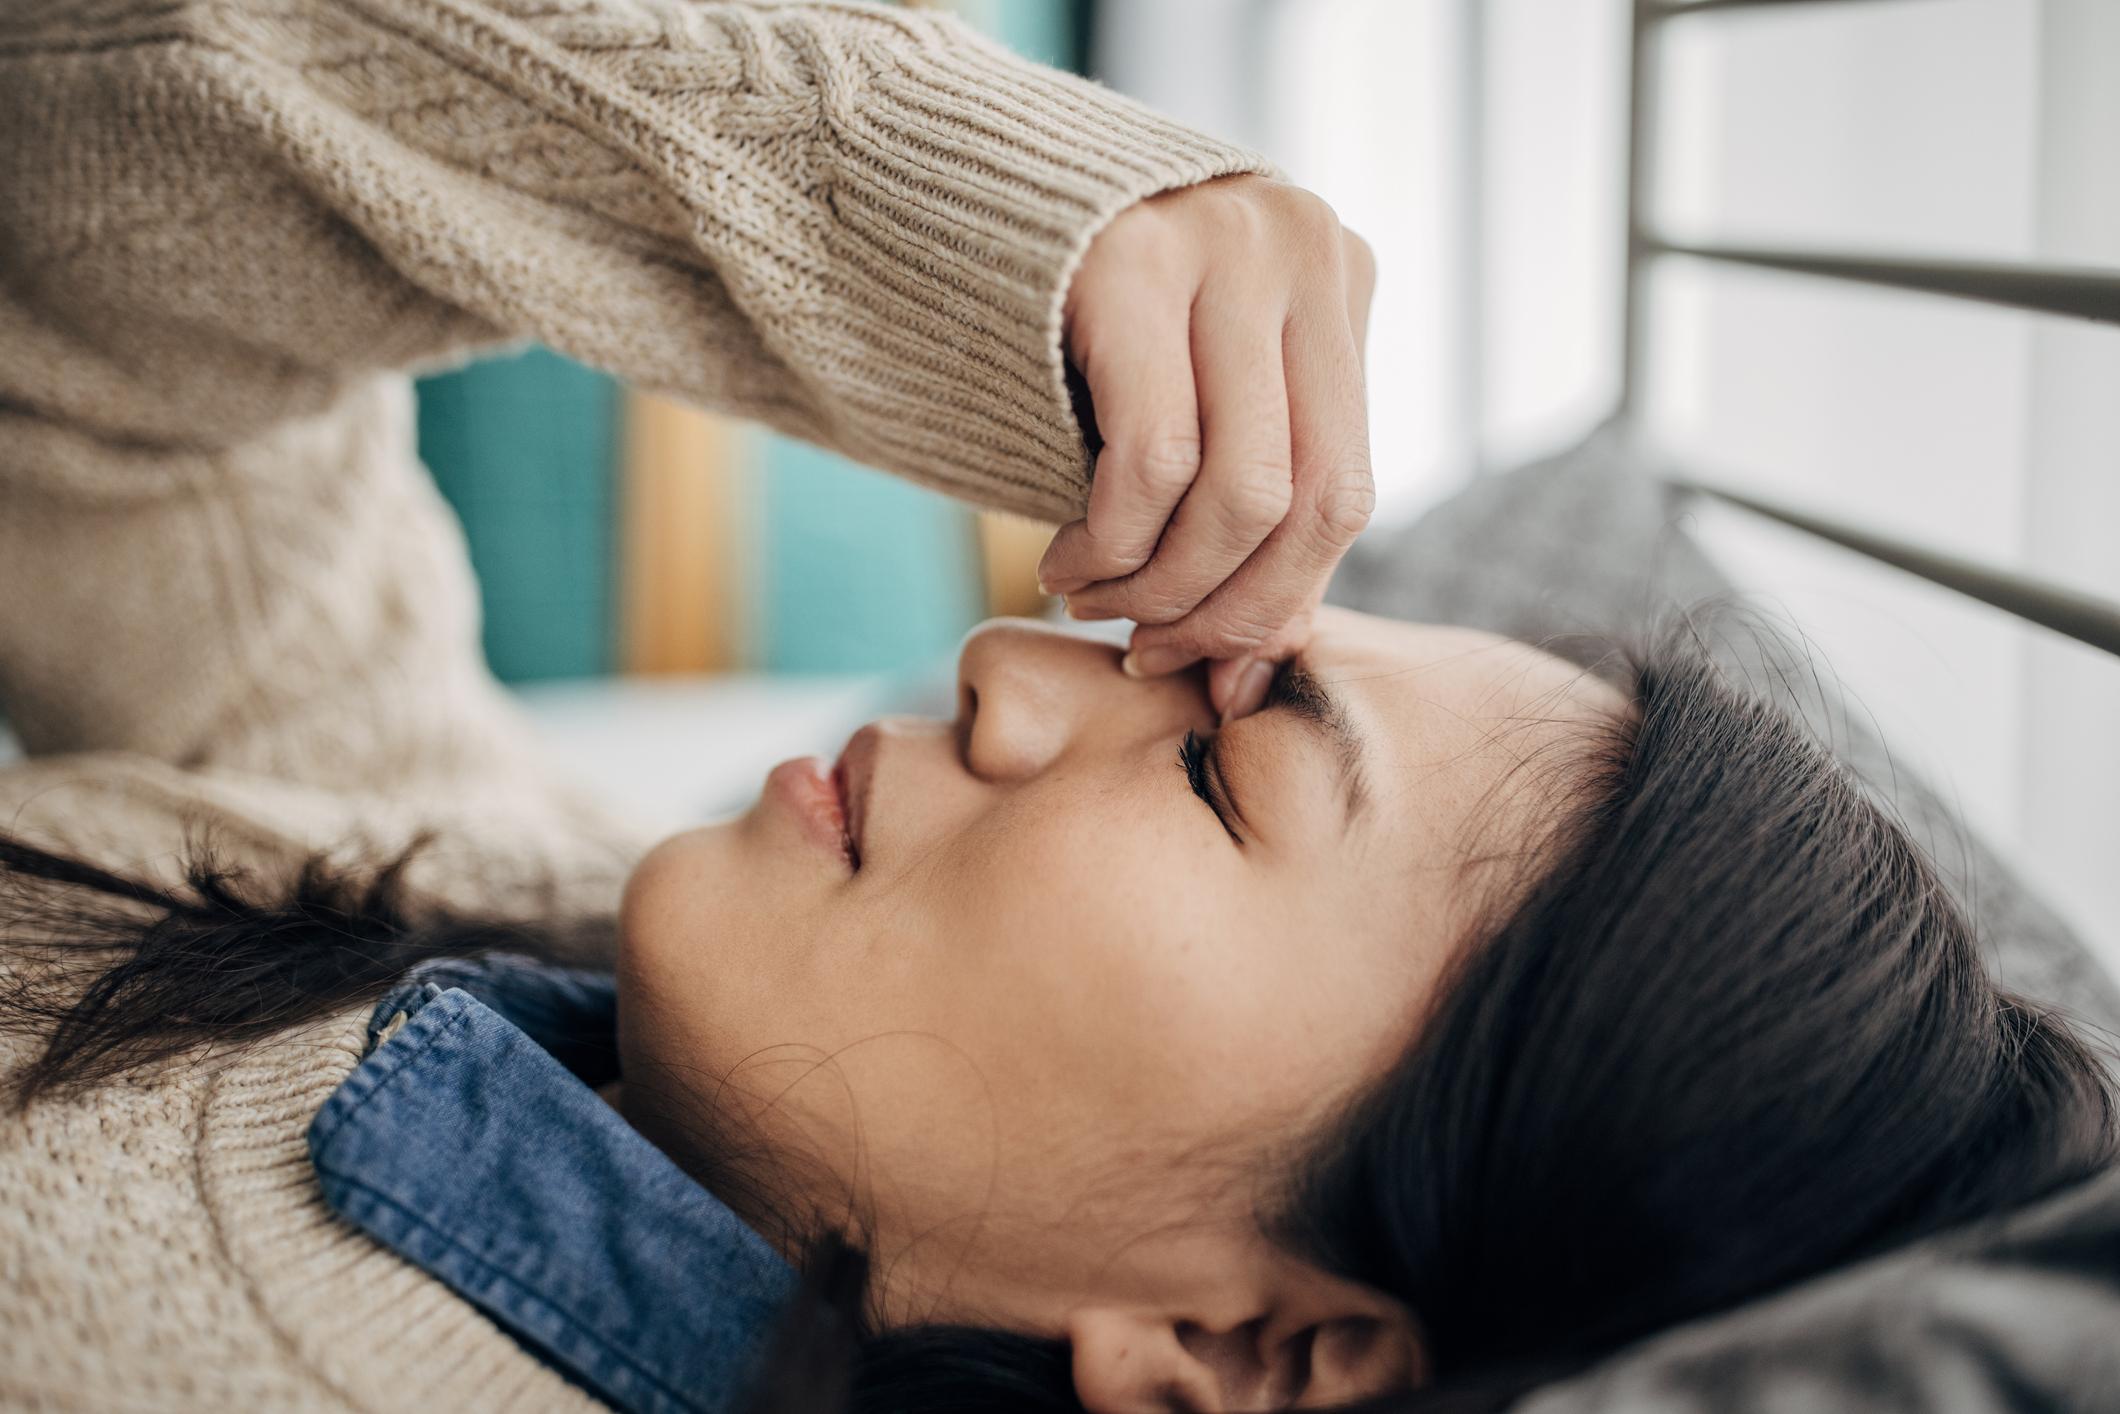 Migraine : 6 conseils pour la prévenir et la soulager